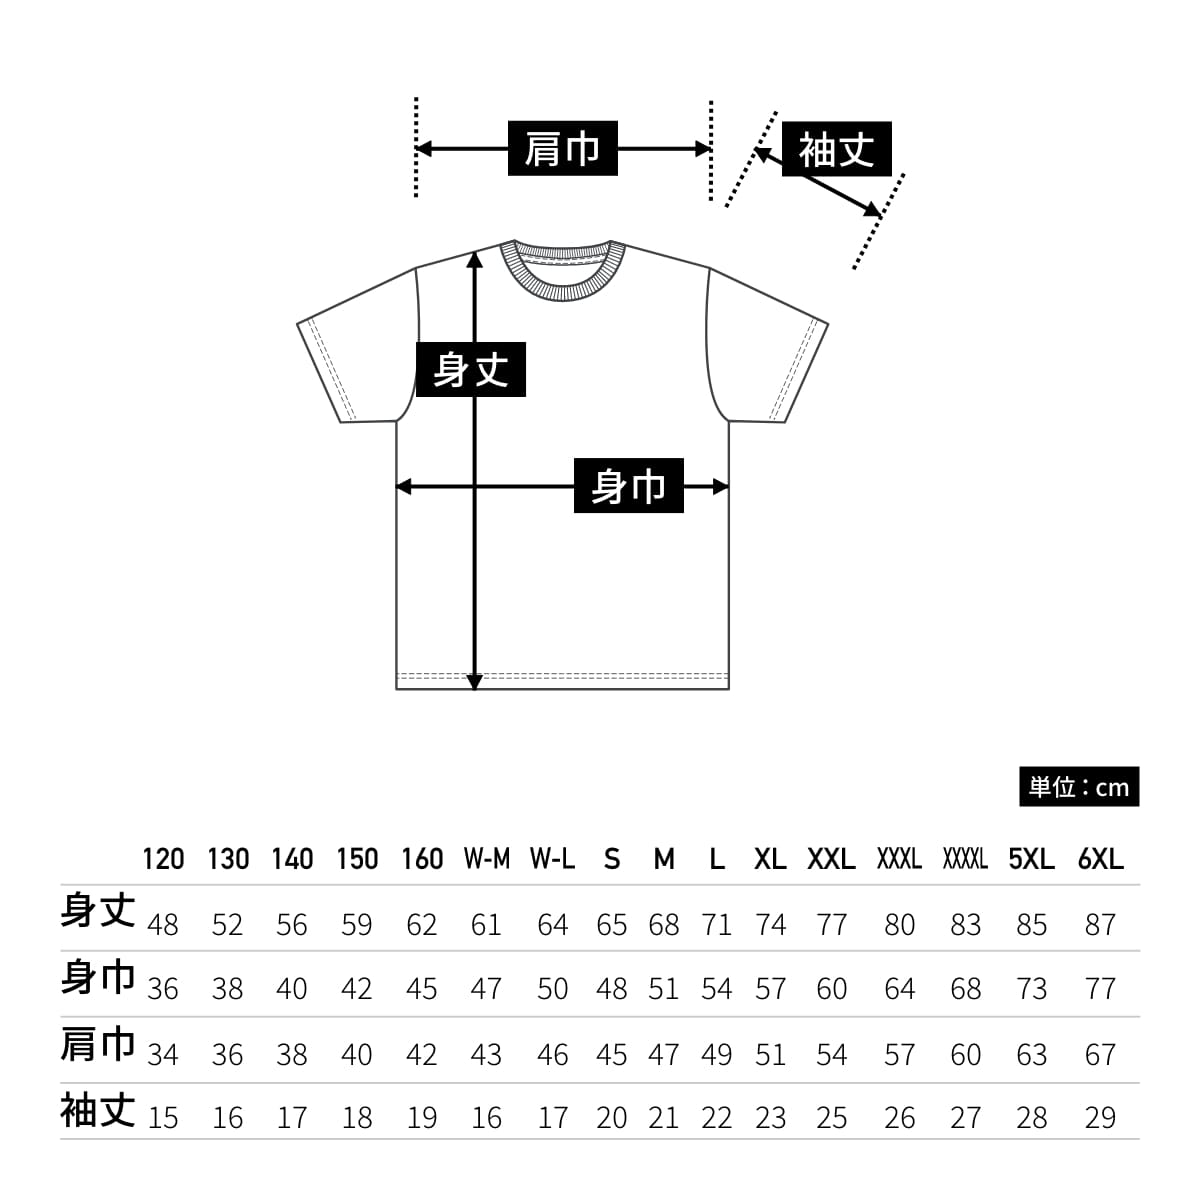 4.1オンスドライTシャツ | メンズ | 1枚 | 5900-01 | ブライトグリーン